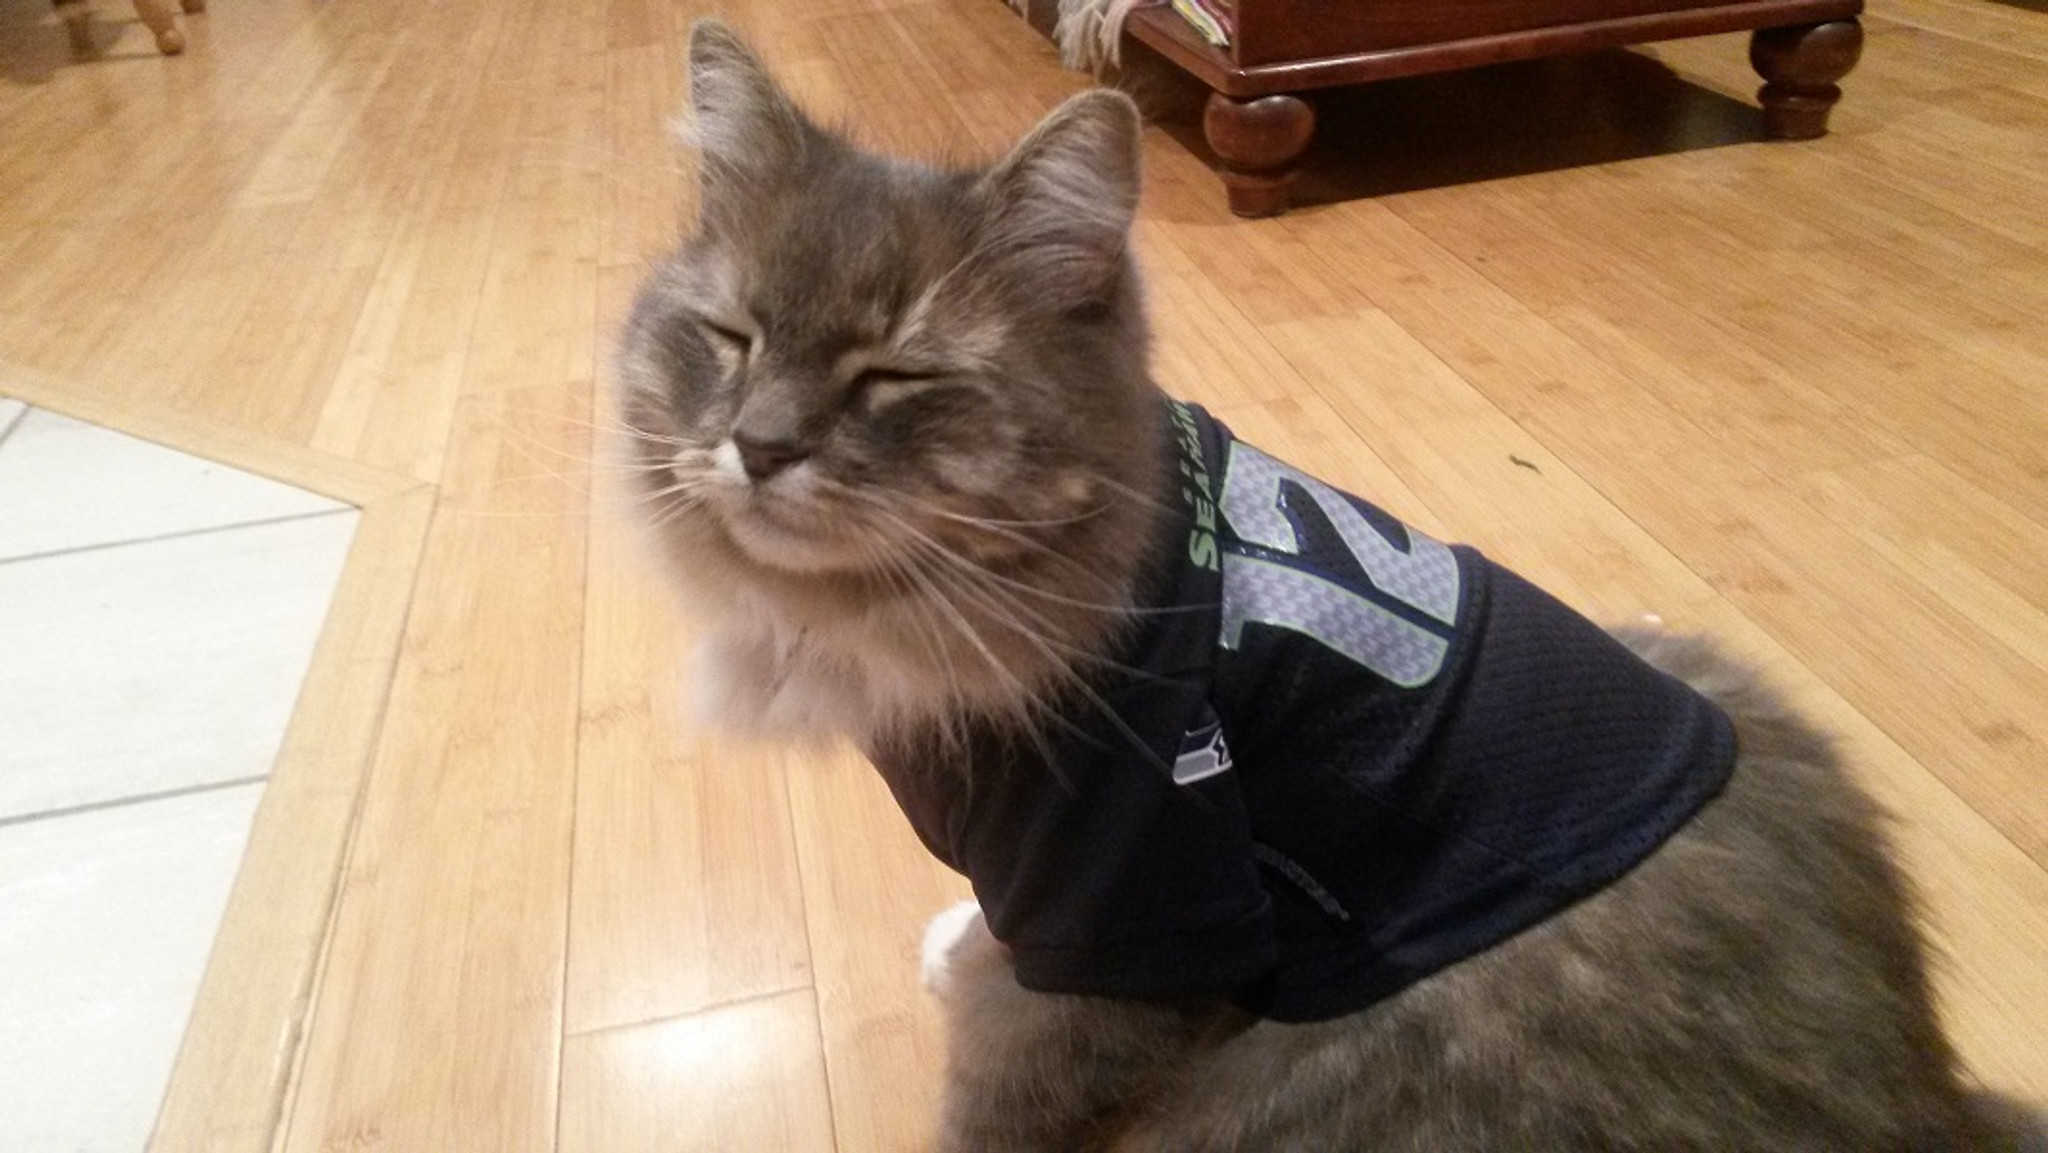 seahawks cat jersey